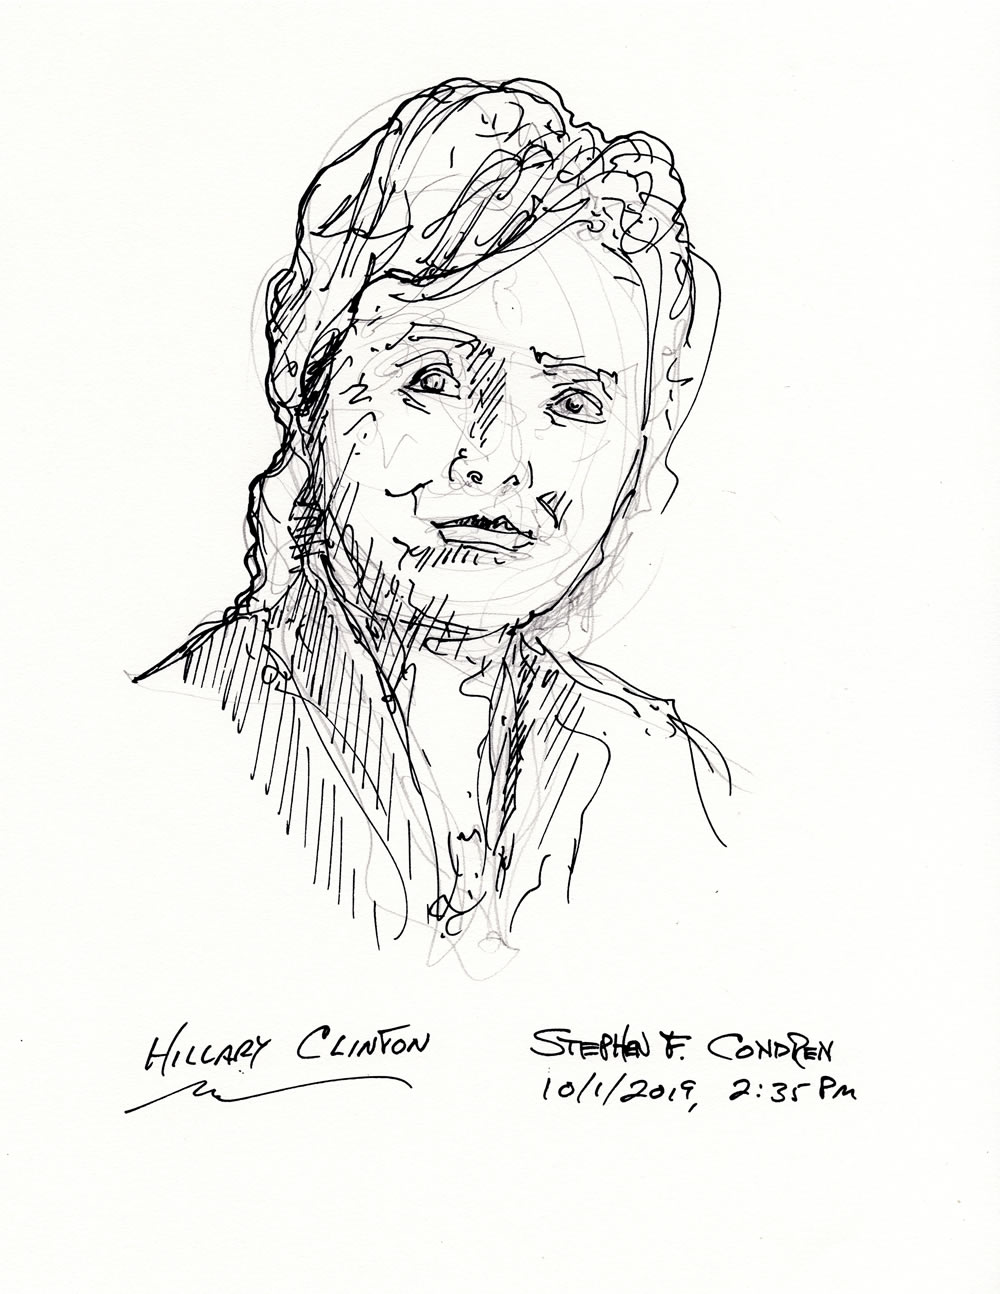 Hillary Clinton #416Z pen & ink drawing by artist Stephen F. Condren.